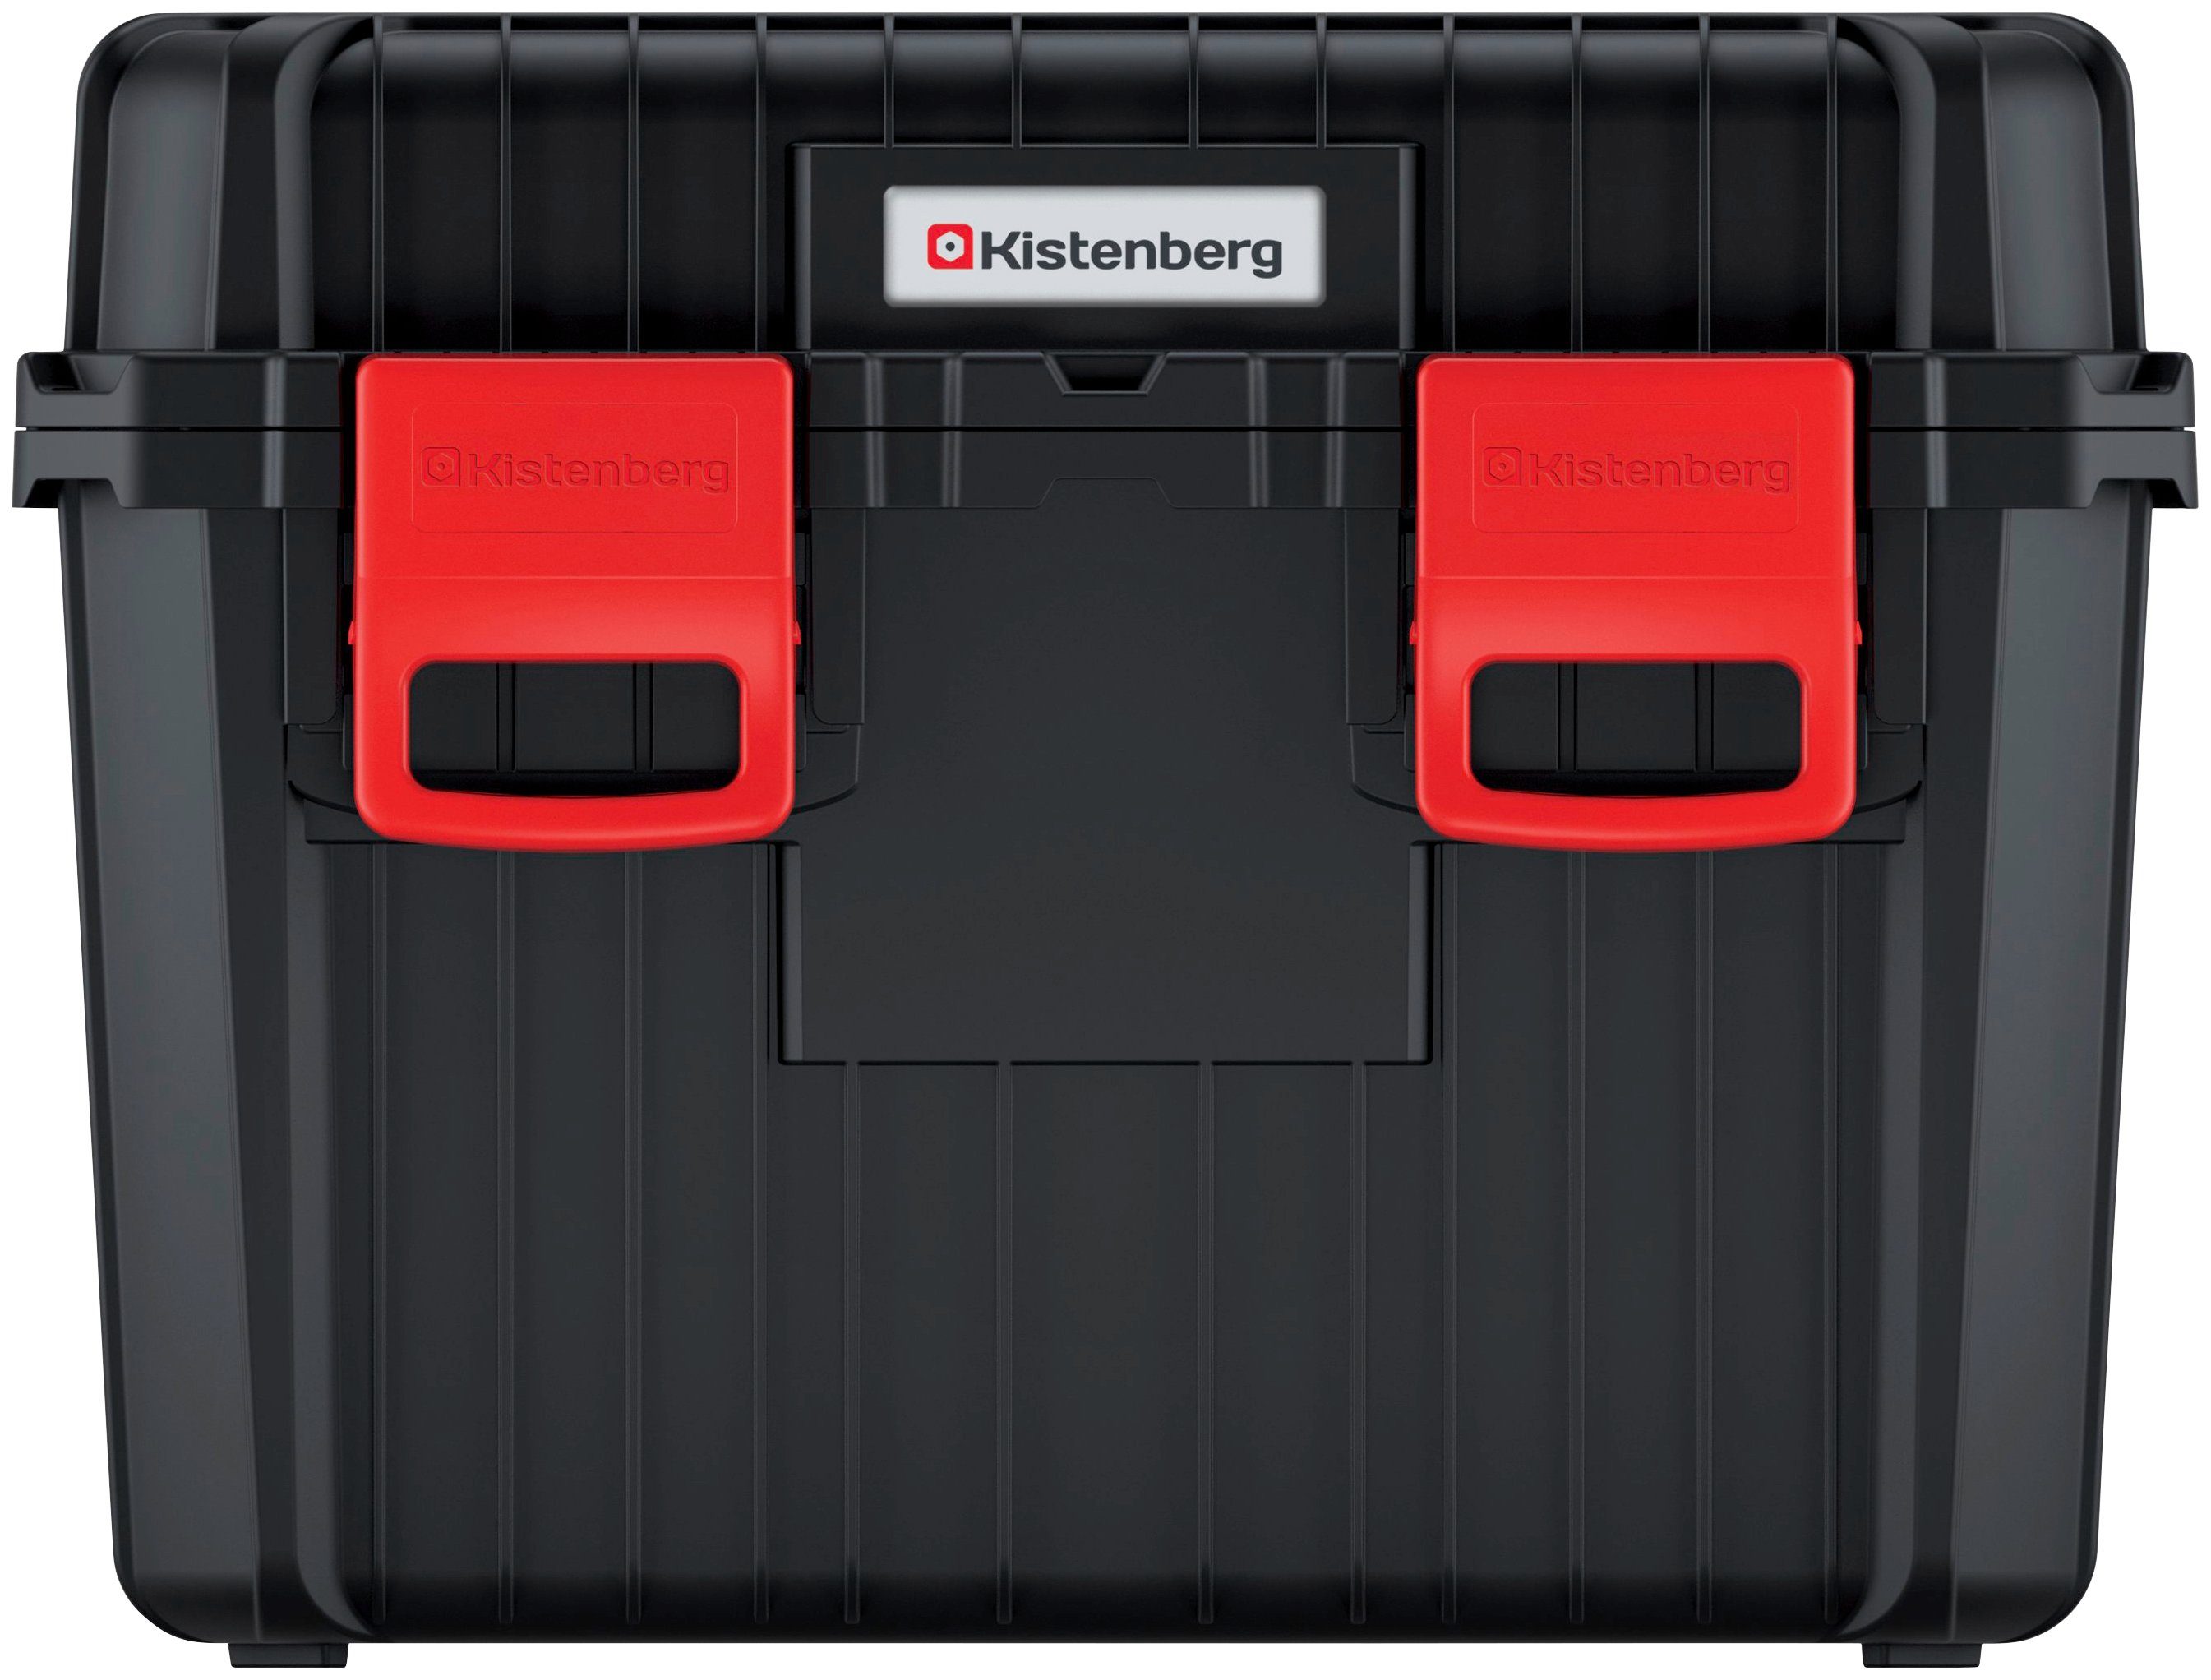 Prosperplast Werkzeugbox HEAVY, 45,5 x 36 x 33,7 cm